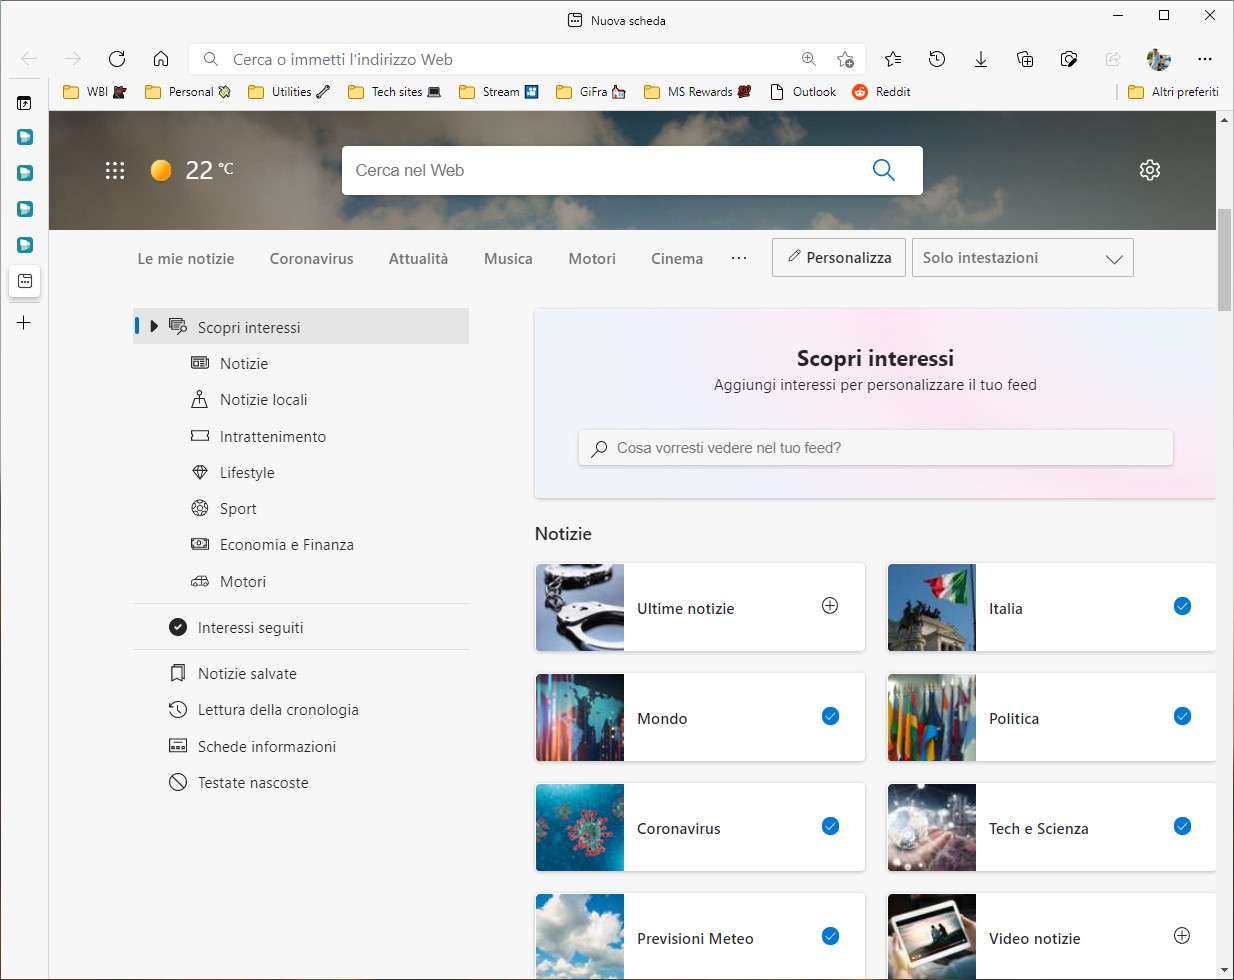 Microsoft Edge 91 - Personalizzazione interessi nella pagina Nuova scheda